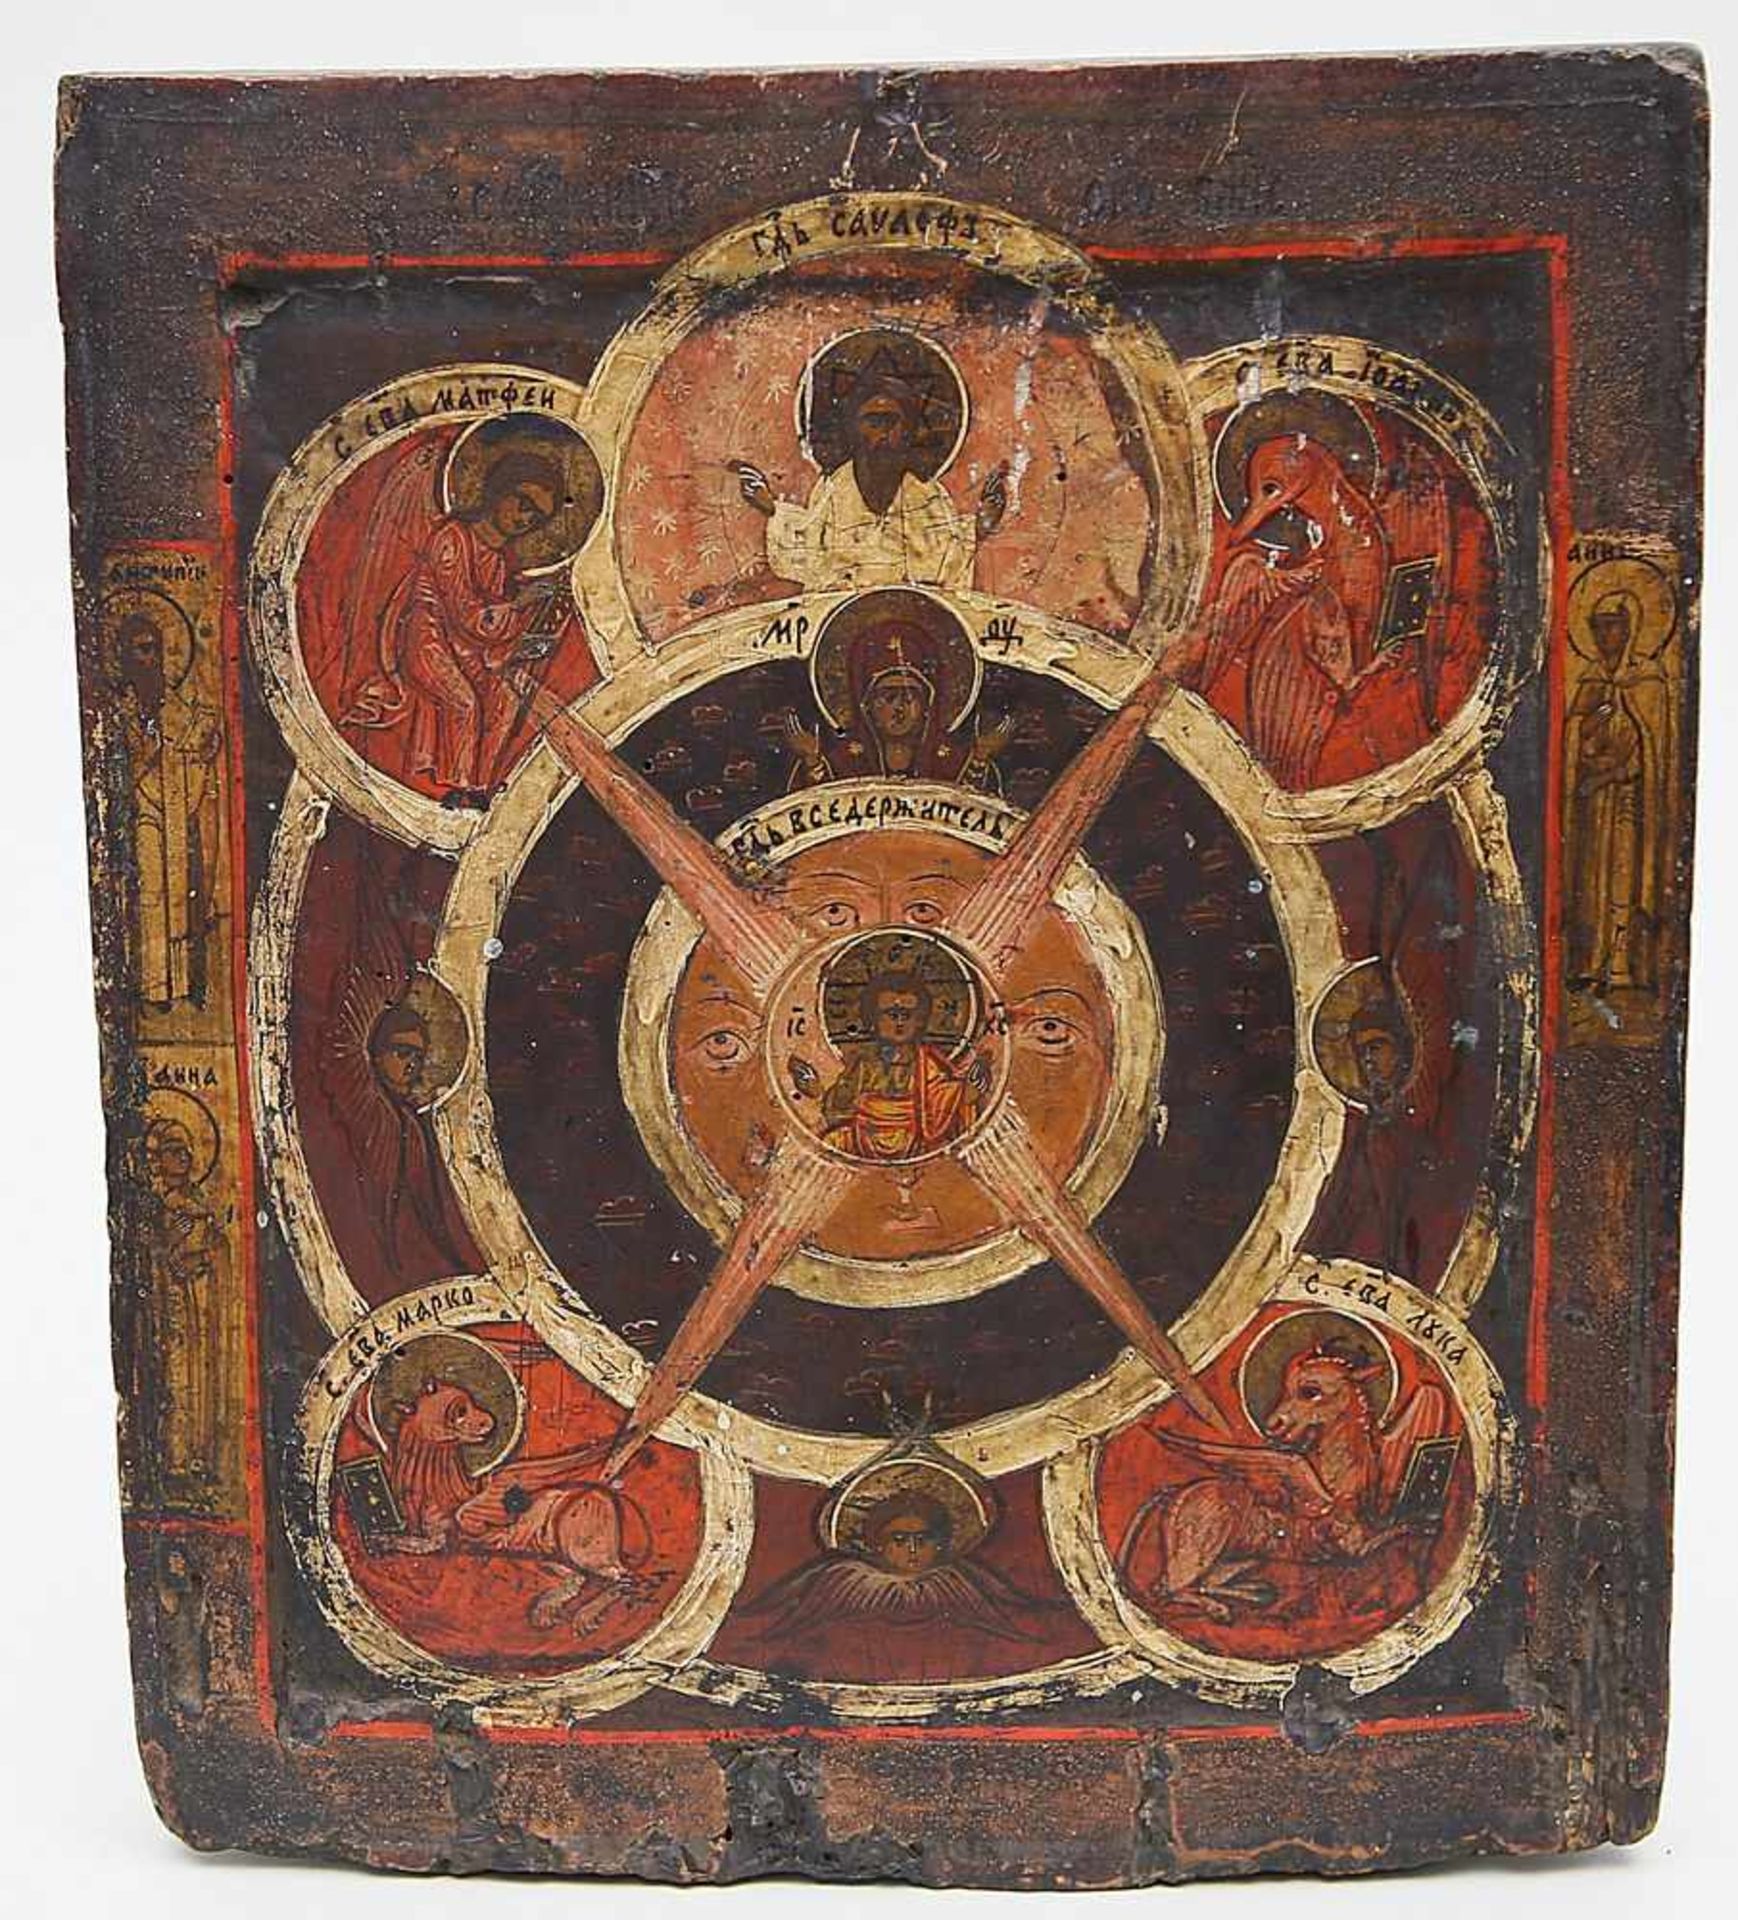 Ikone (Russland, 18. Jh.)"Das allsehende Auge Gottes". Tempera/Holz. Unterer Bereich mit